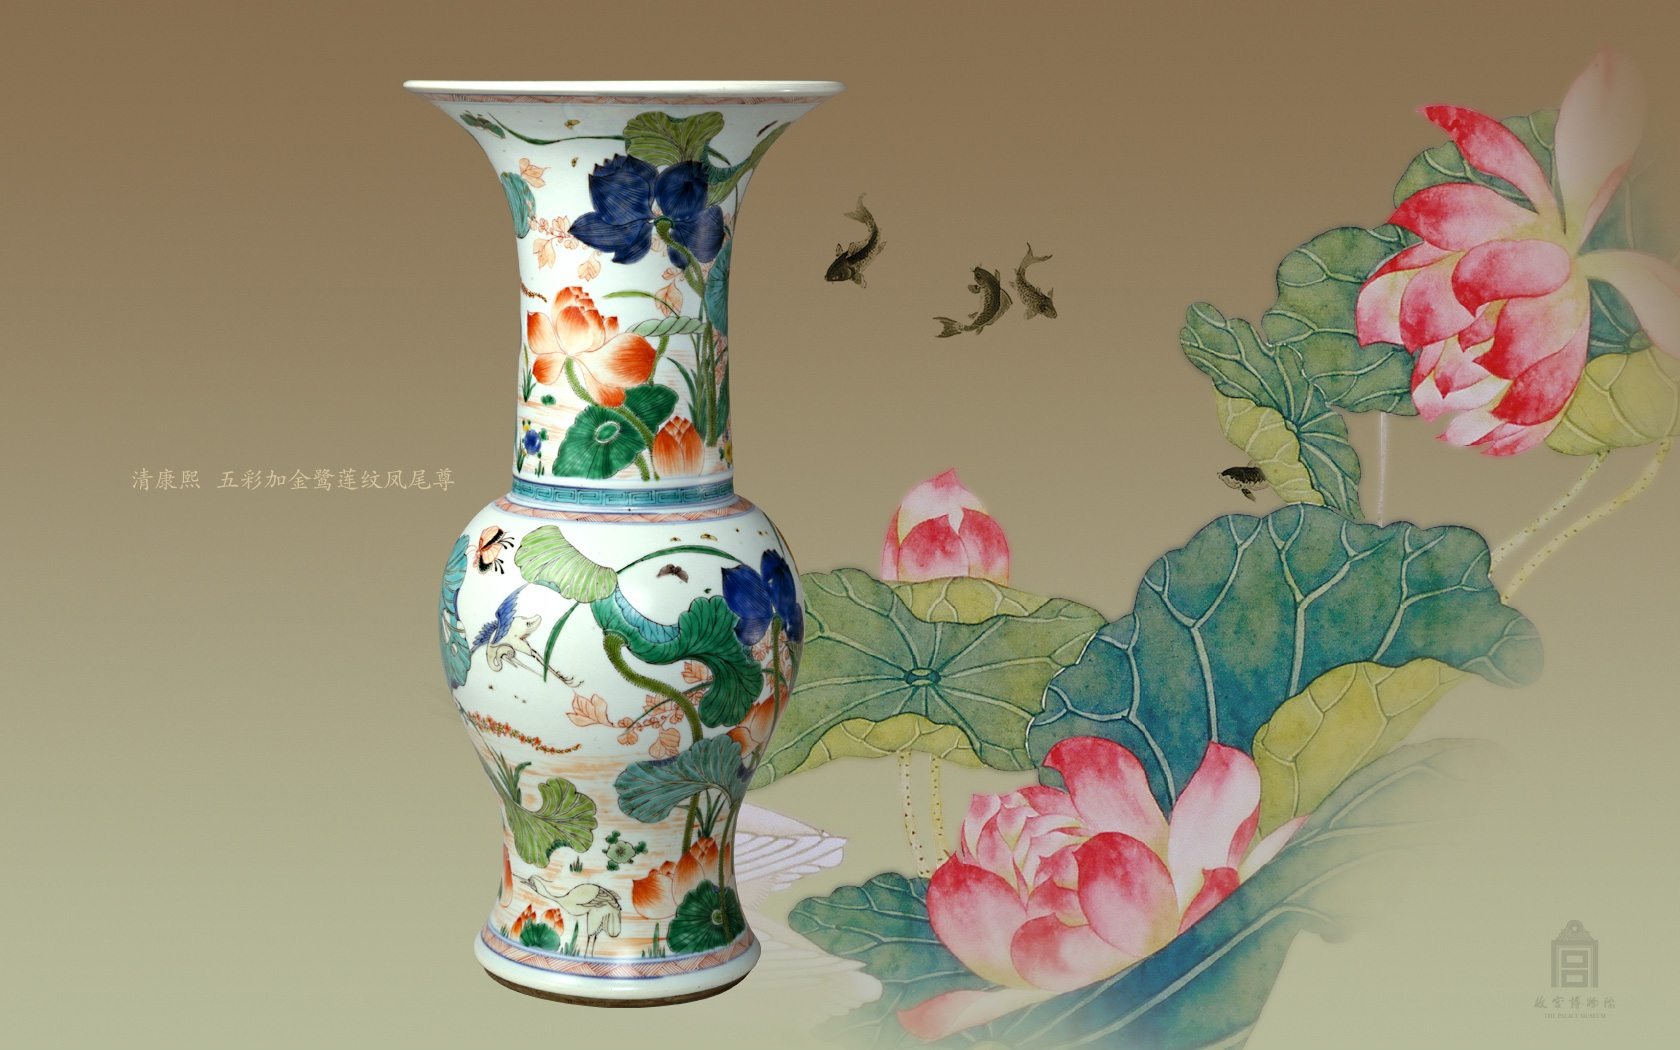 北京故宮博物院 展示壁紙 (2) #5 - 1680x1050